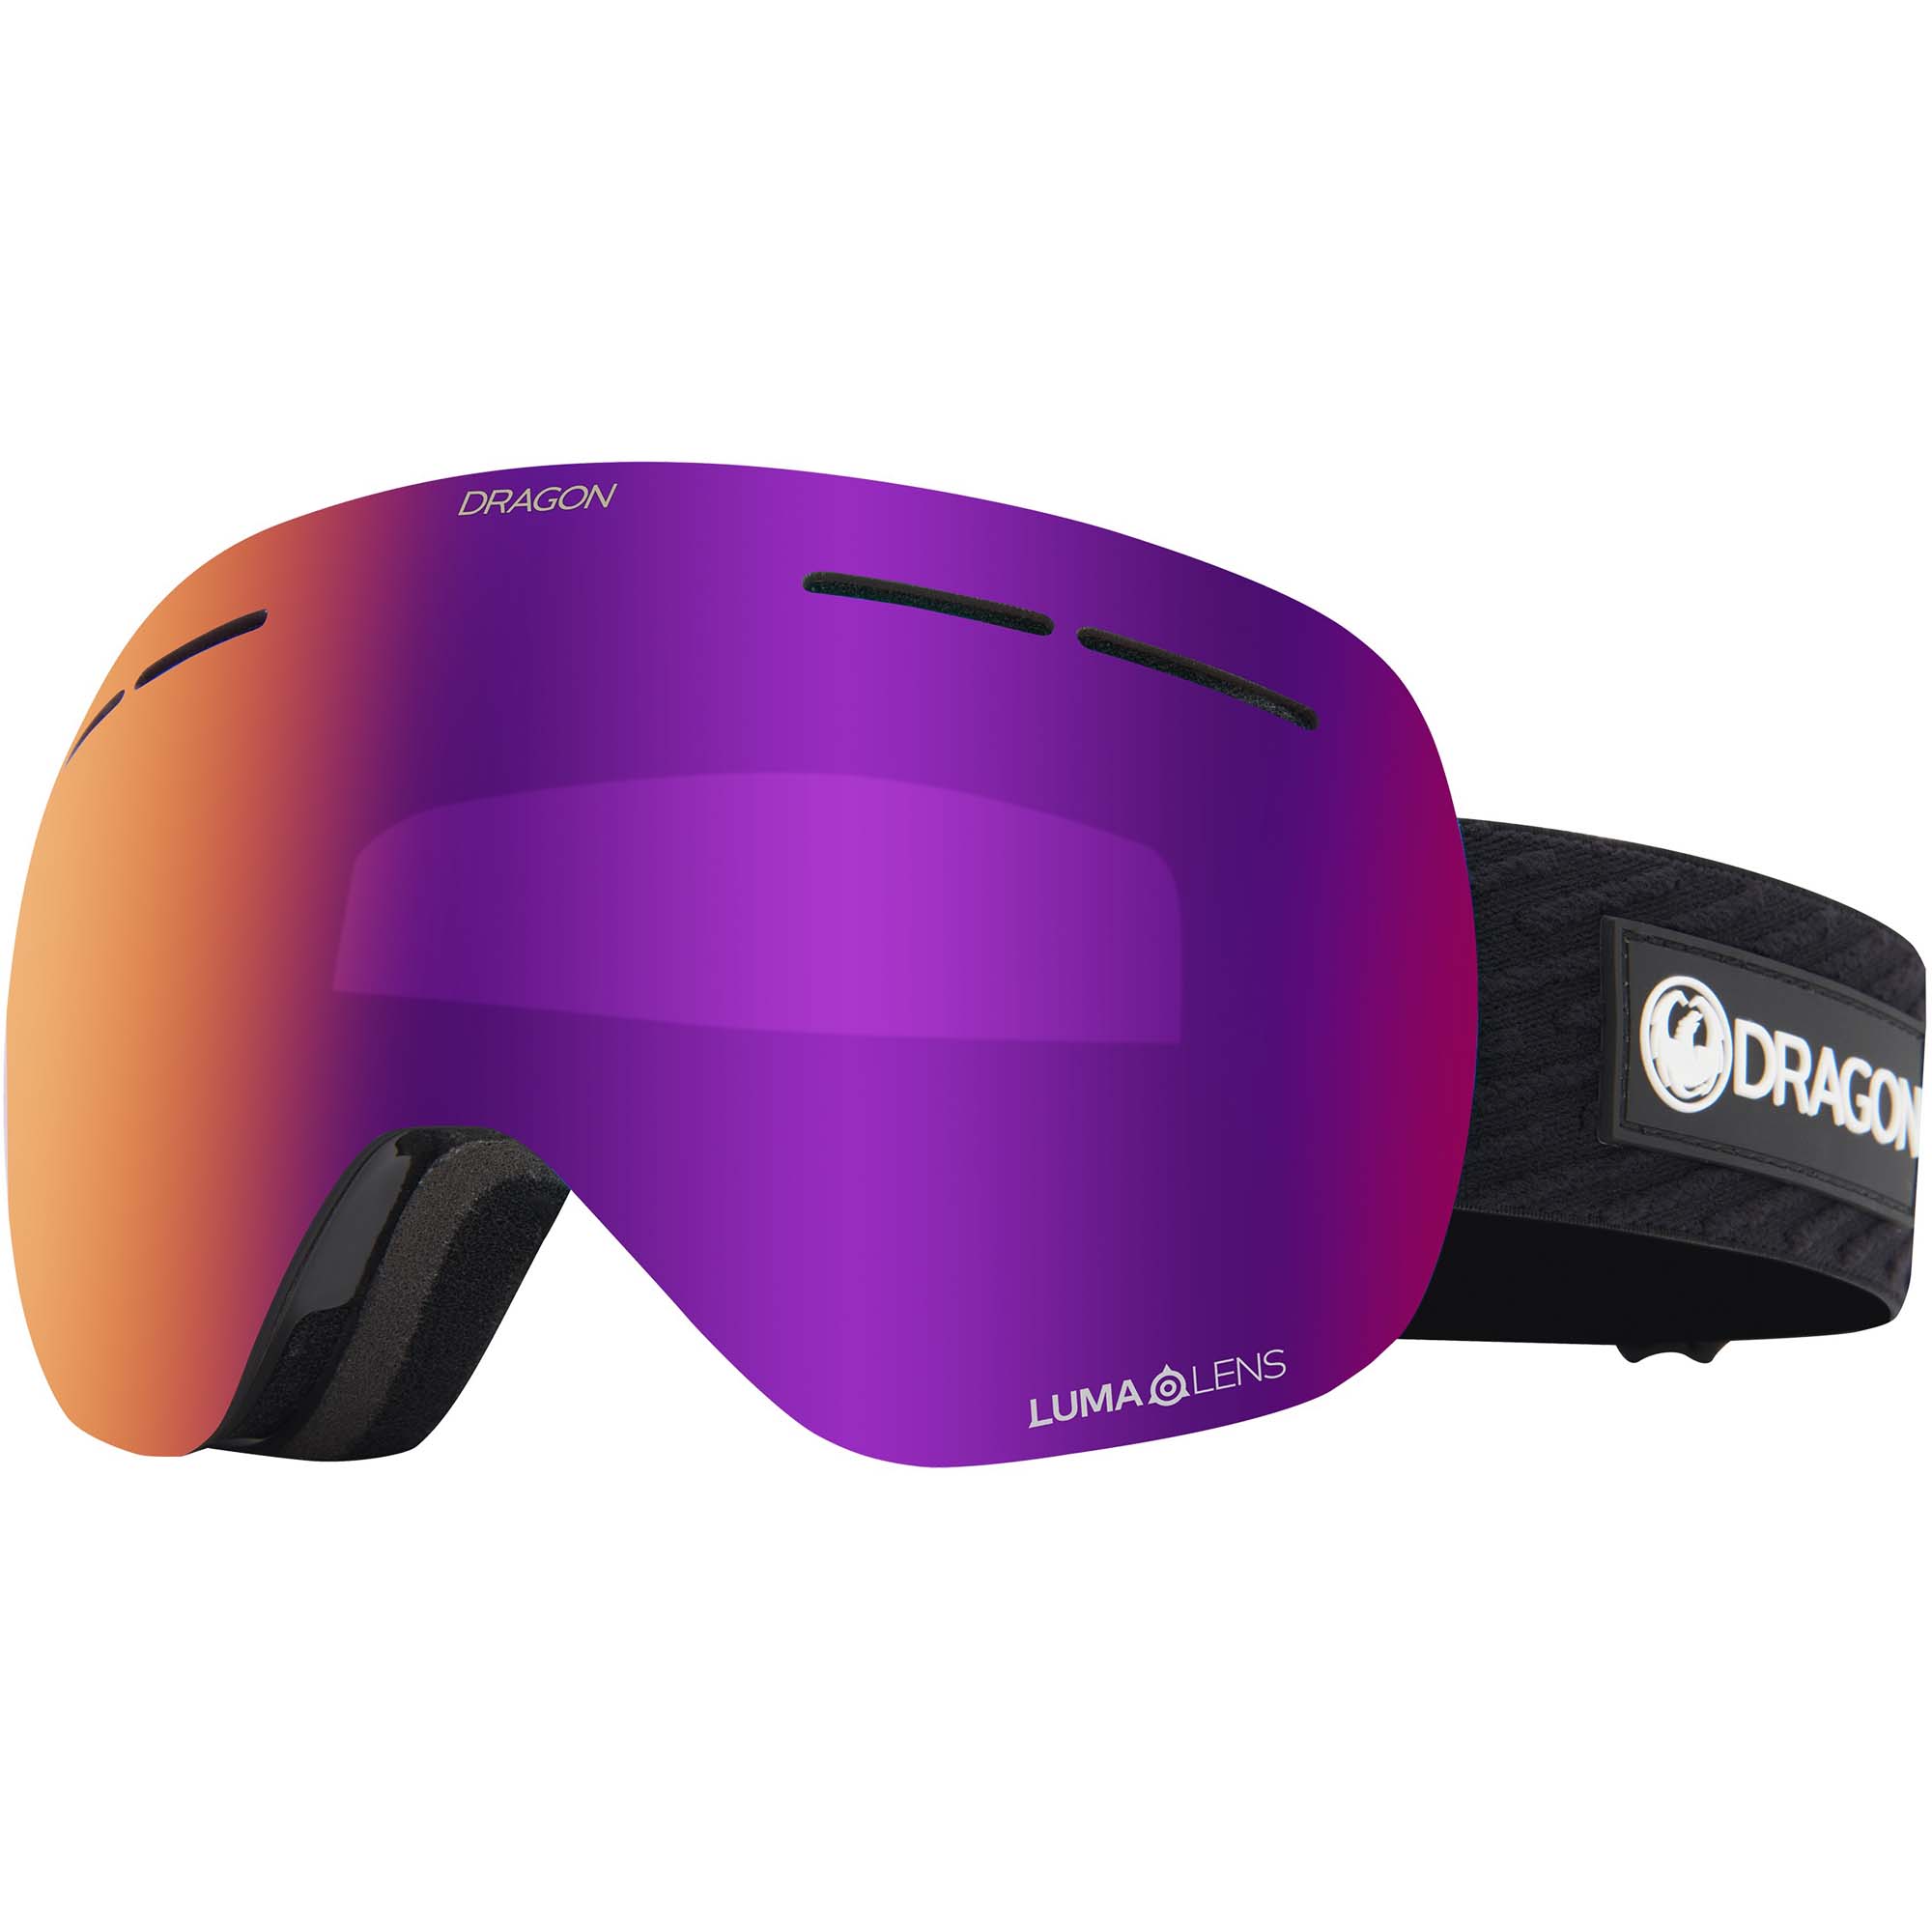 Dragon X1s Snowboard/Ski Goggles